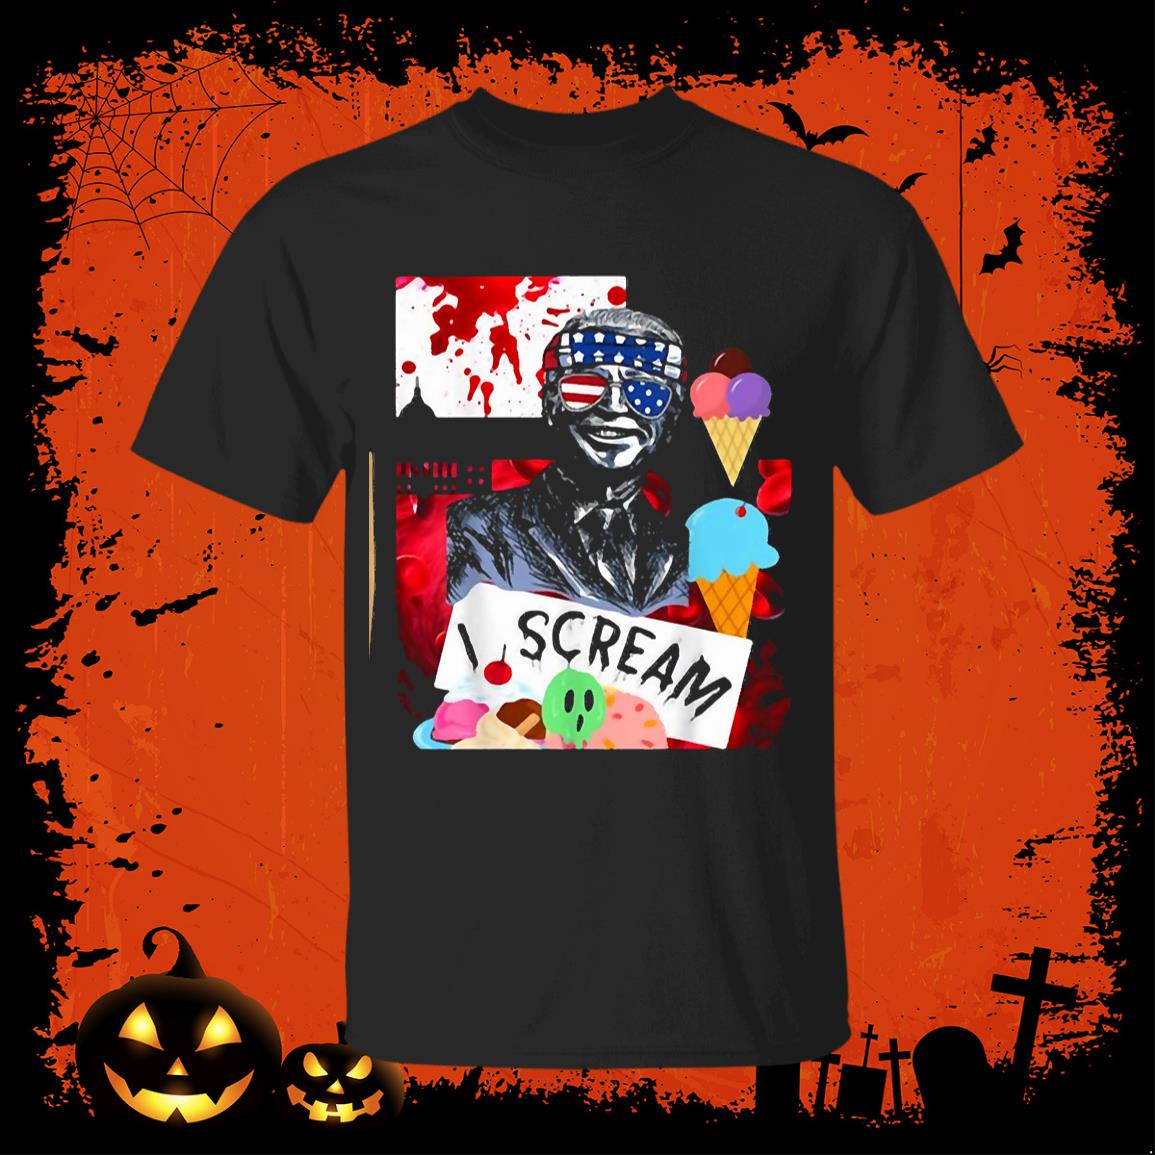 Top 10 Best Funny Biden Halloween T-Shirt Ideas